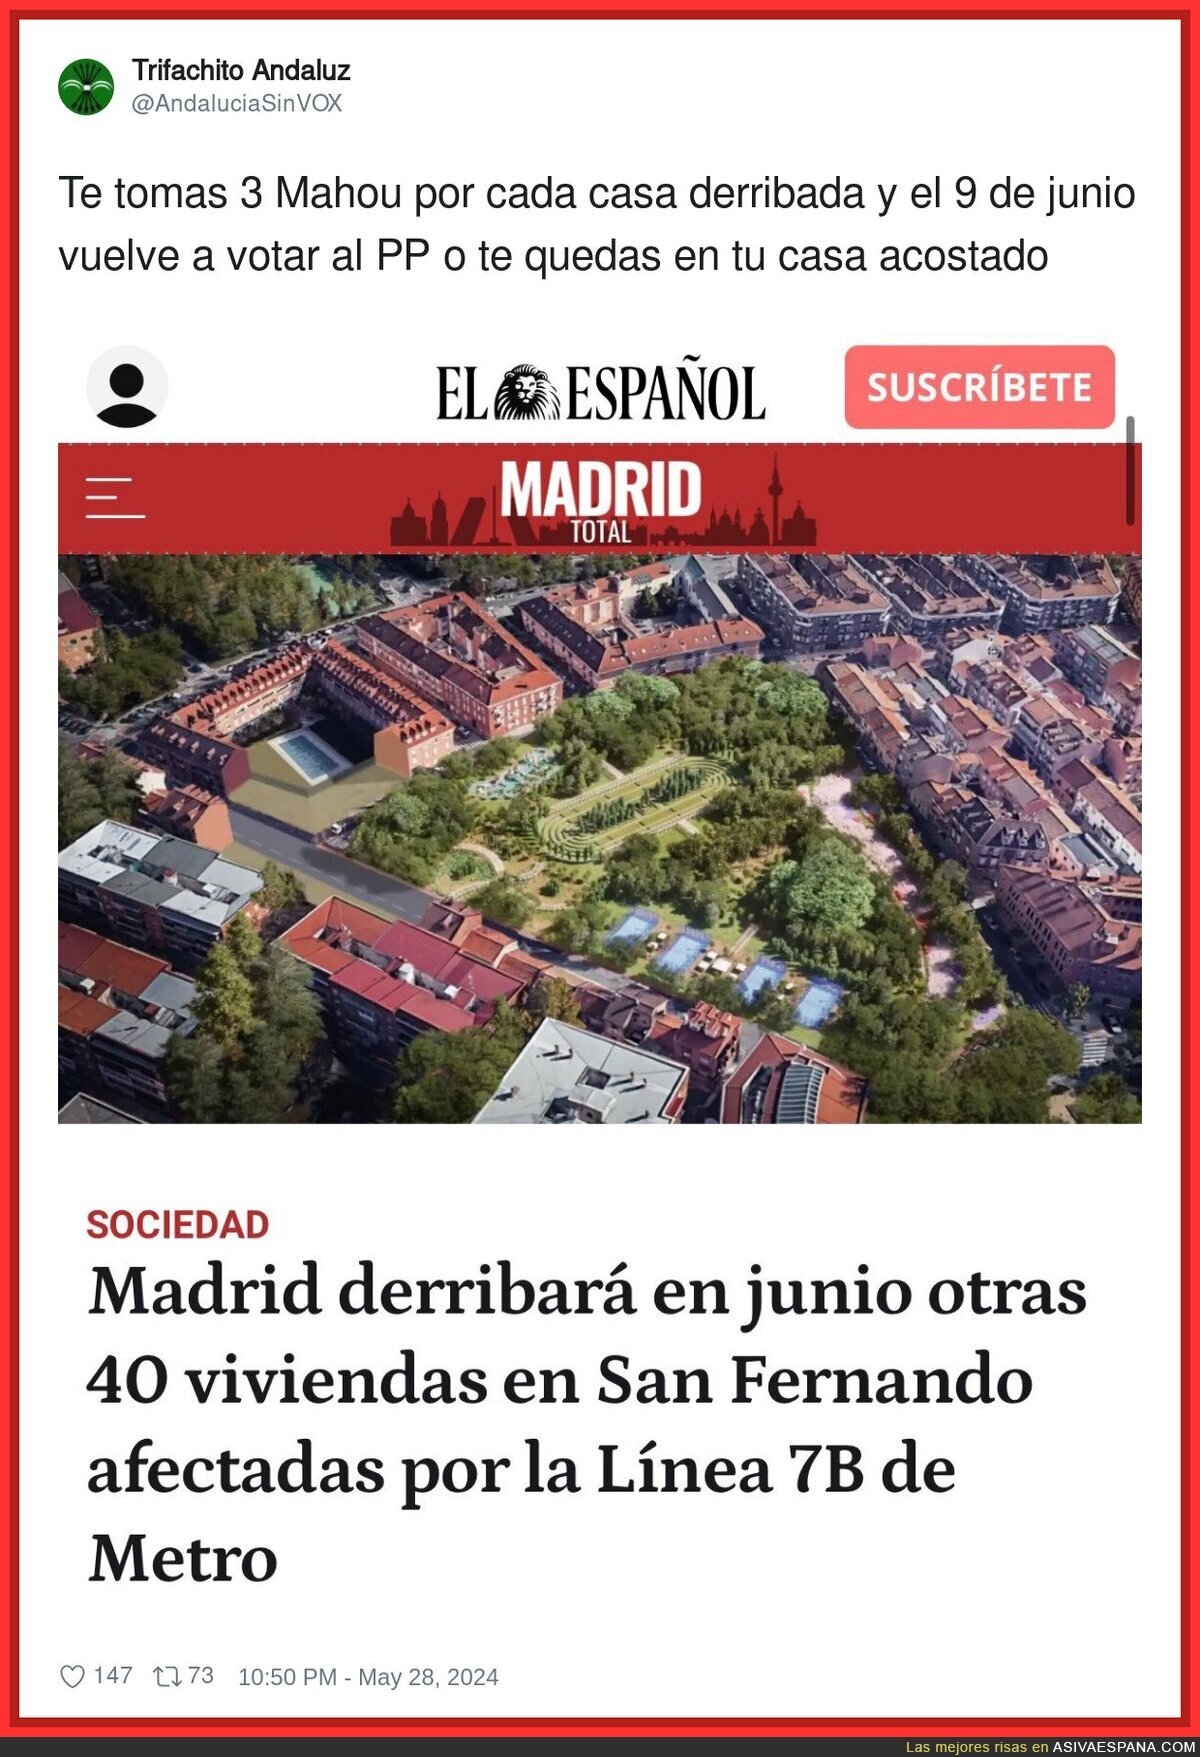 Disfruten lo votado en Madrid